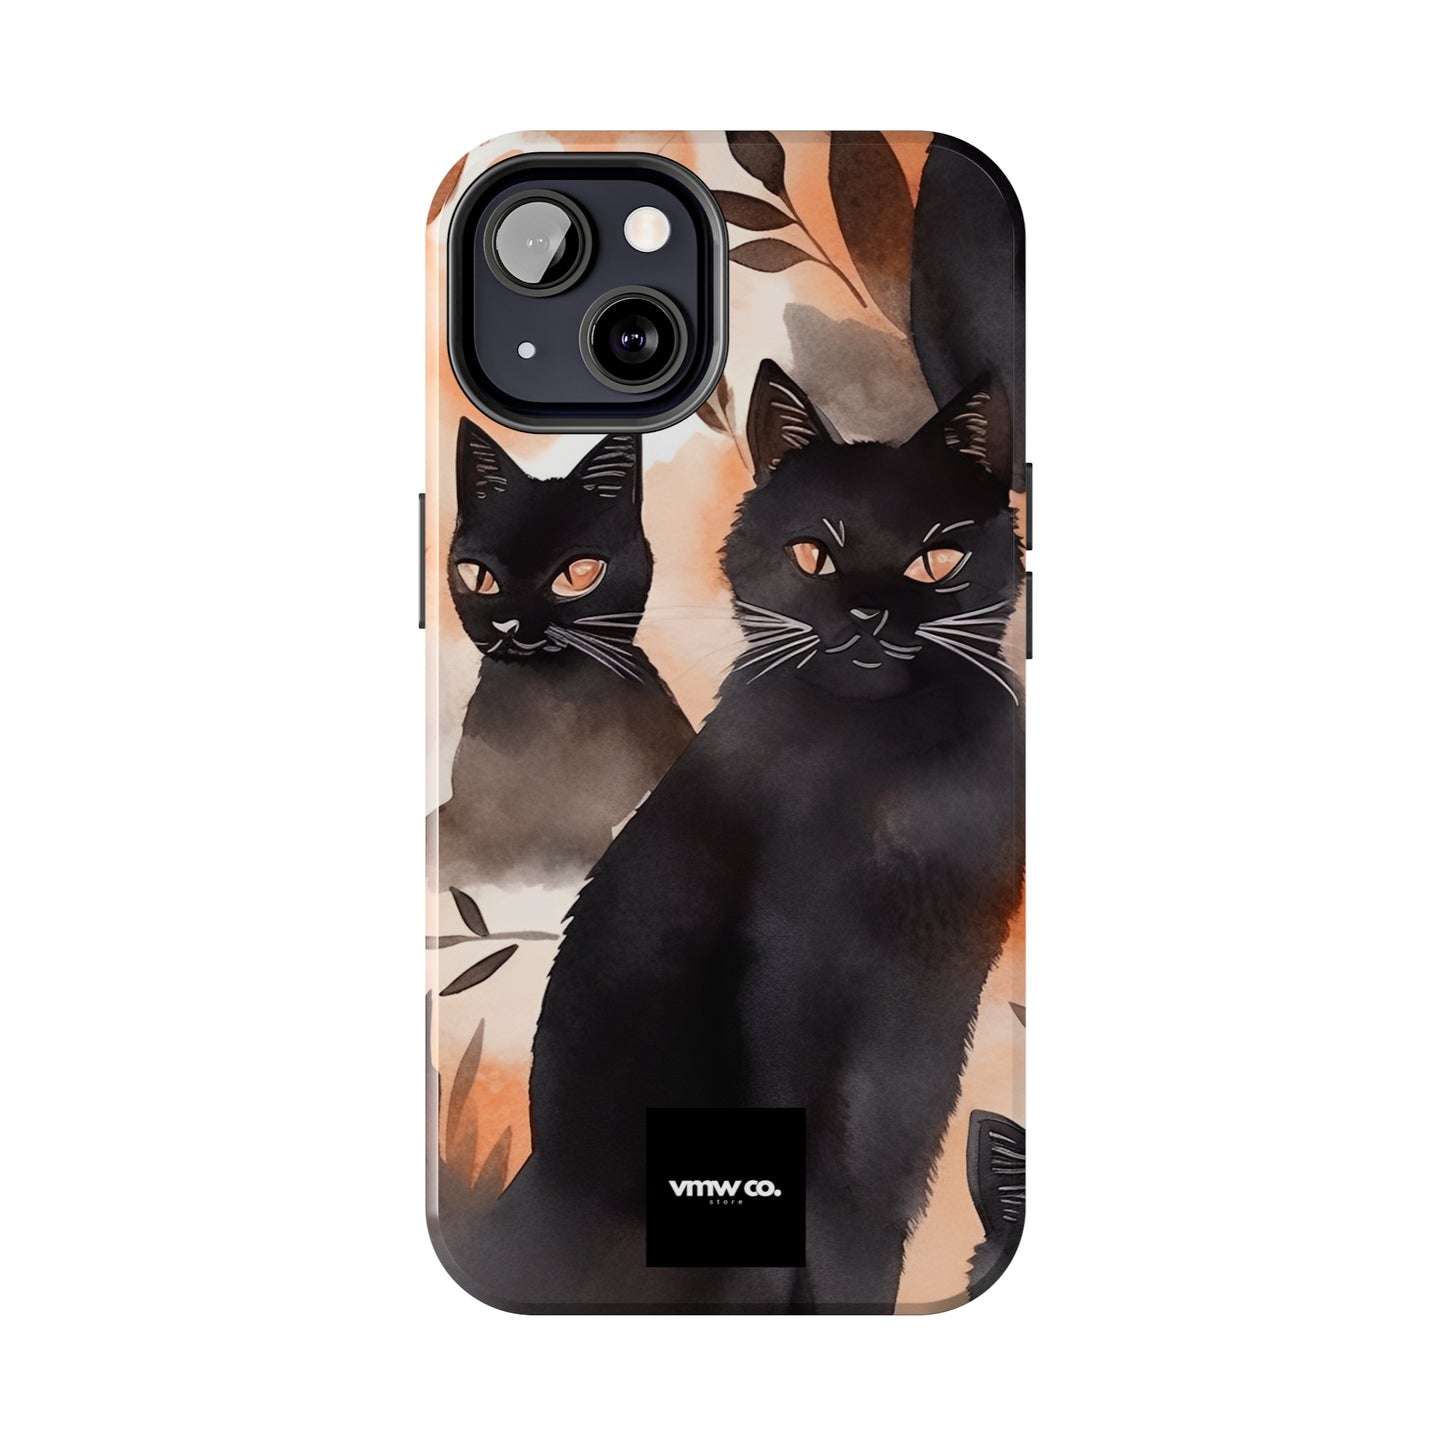 Black Cat iPhone Tough Phone Cases